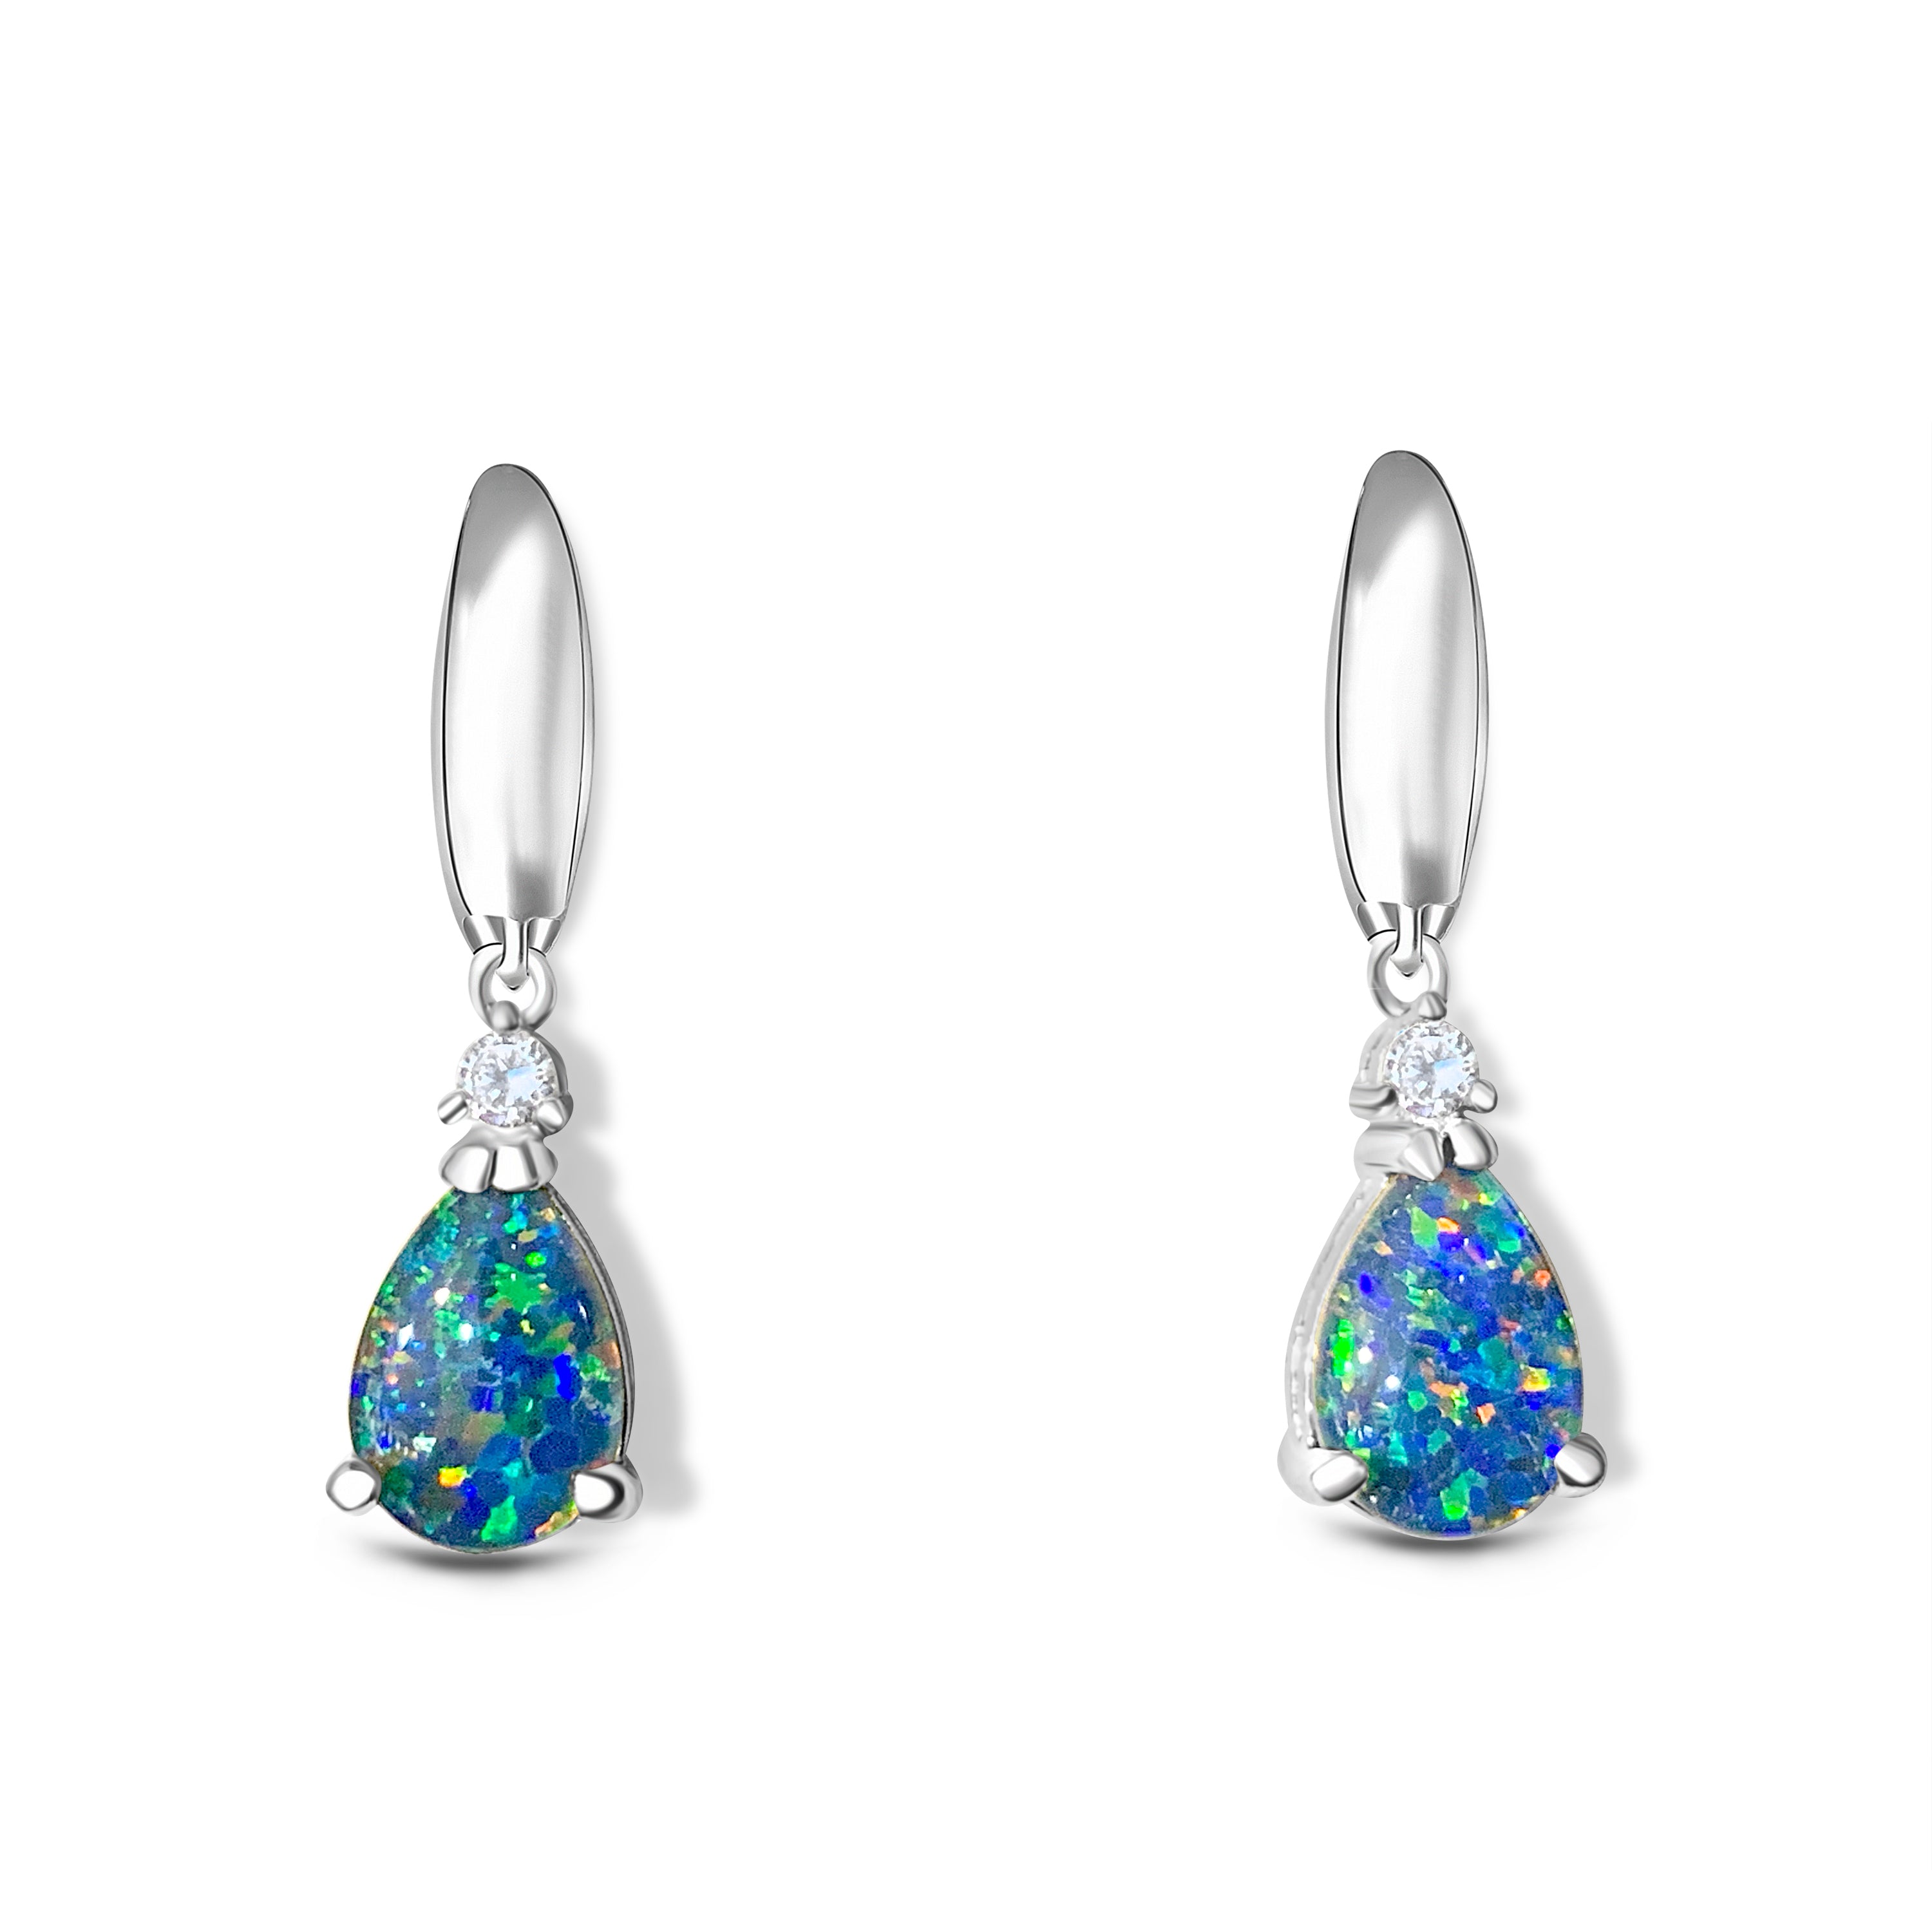 Pair of Sterling Silver 10x7mm Pear shape Opal triplet earrings dangling - Masterpiece Jewellery Opal & Gems Sydney Australia | Online Shop